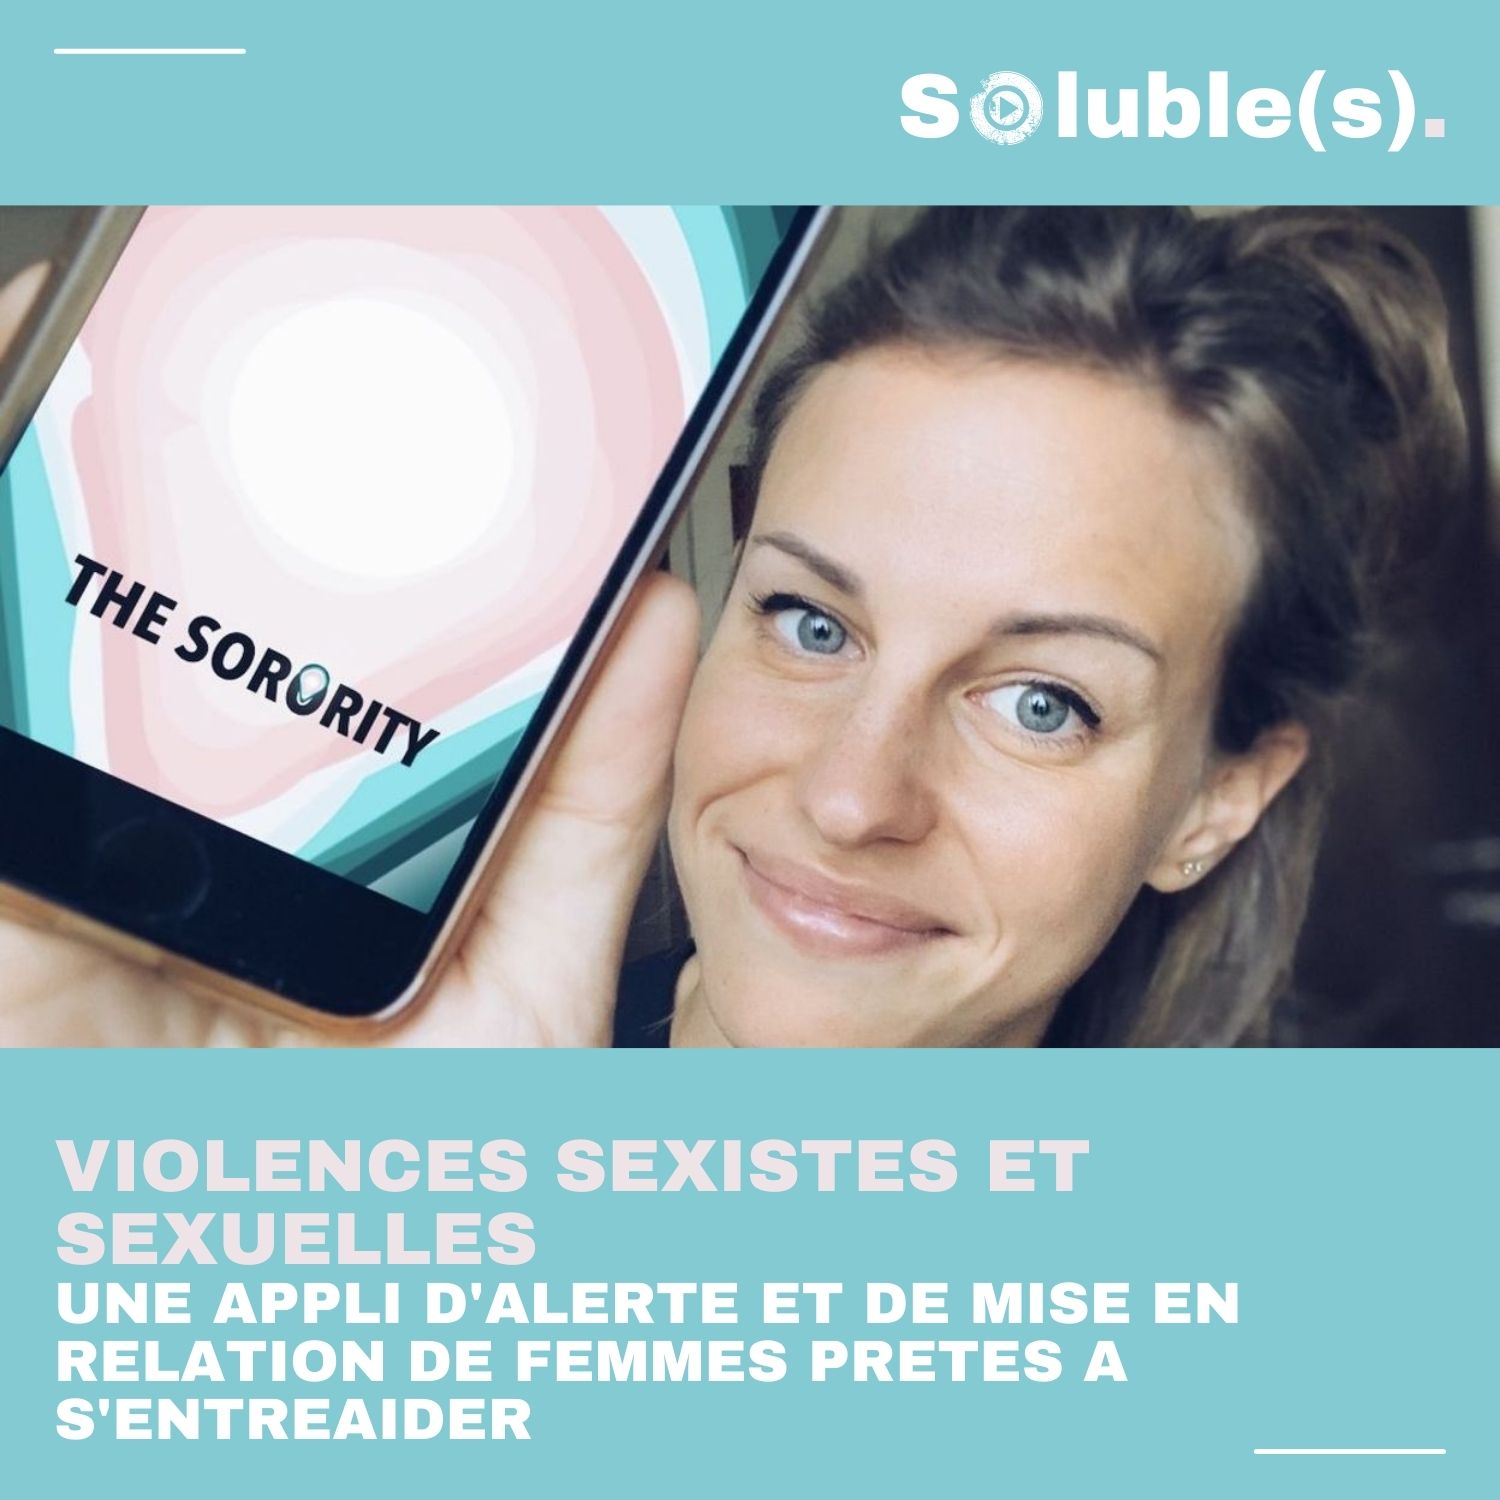 The Sorority Lappli Dentraide Pour Se Protéger Contre Les Violences Sexuelles Csoluble 